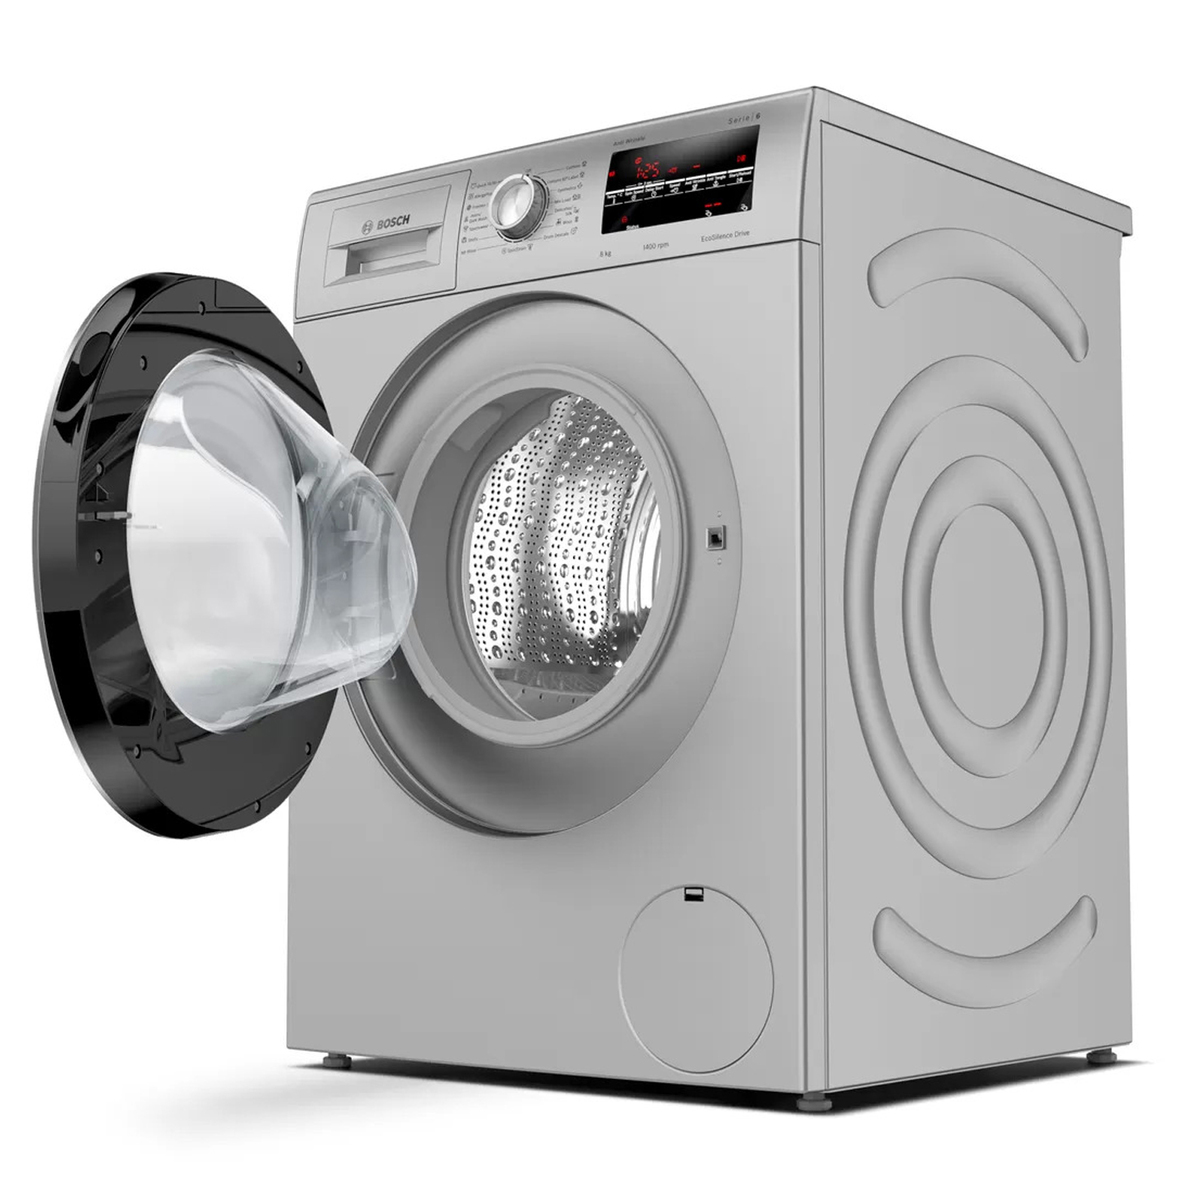 Bosch WAJ2846SIN Front Load Washing Machine Platinum Silver 8kg